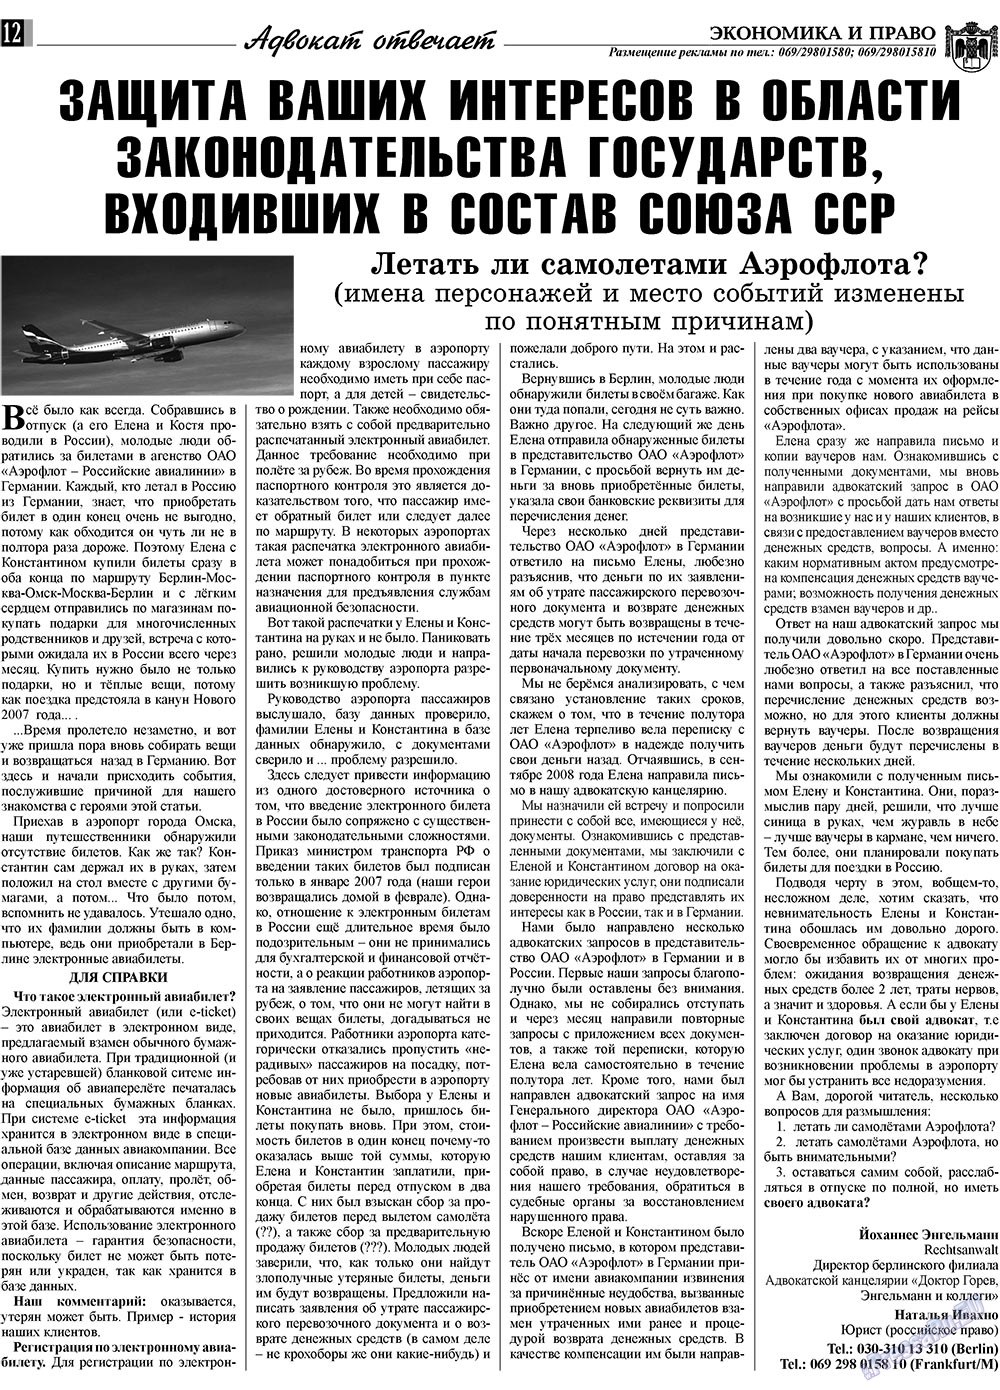 Экономика и право, газета. 2009 №8 стр.12